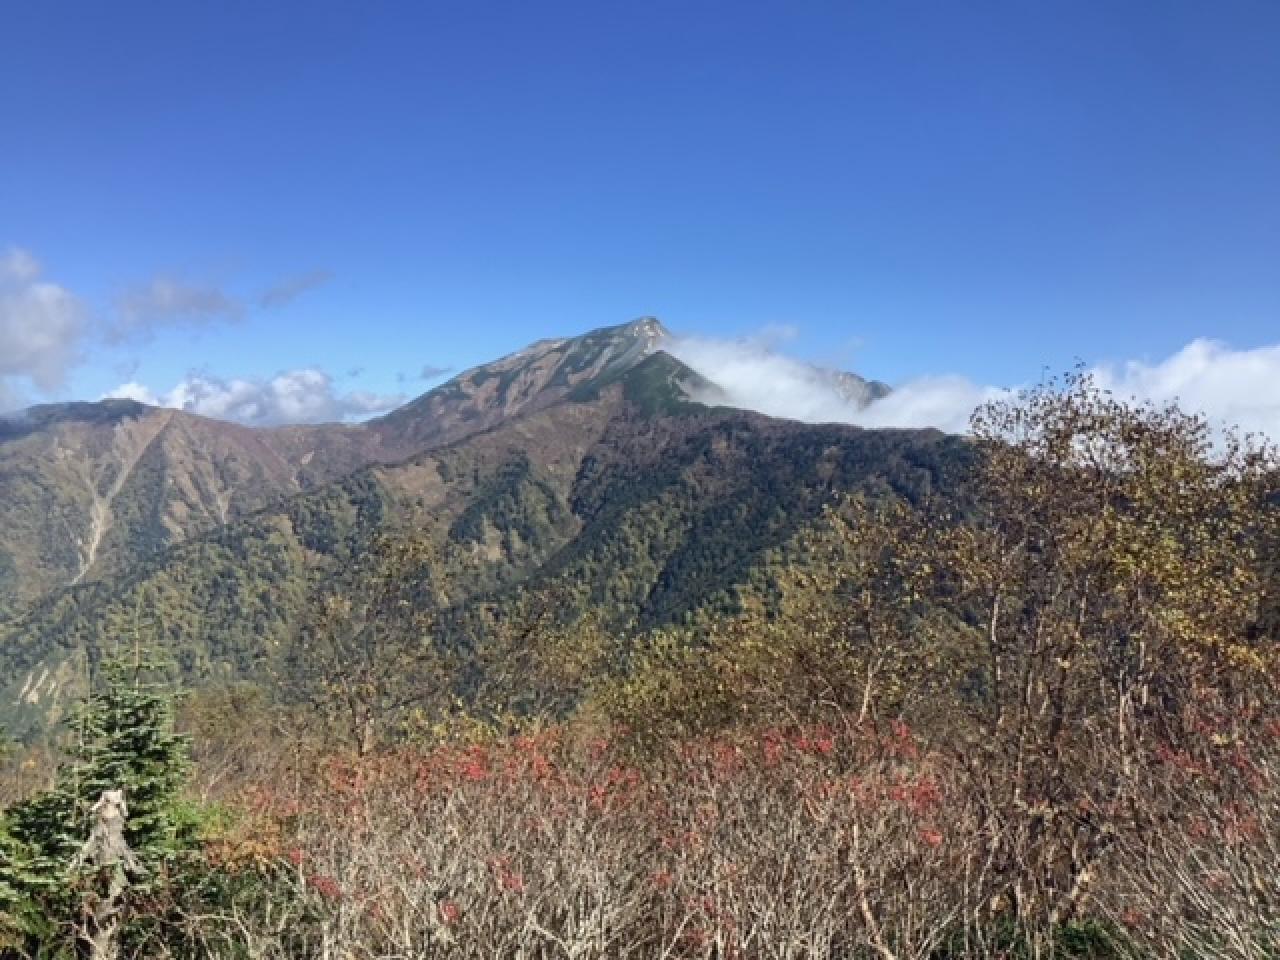 鹿島槍ヶ岳も全容を現してくれました。頂上付近に雪が残っているのが見えます